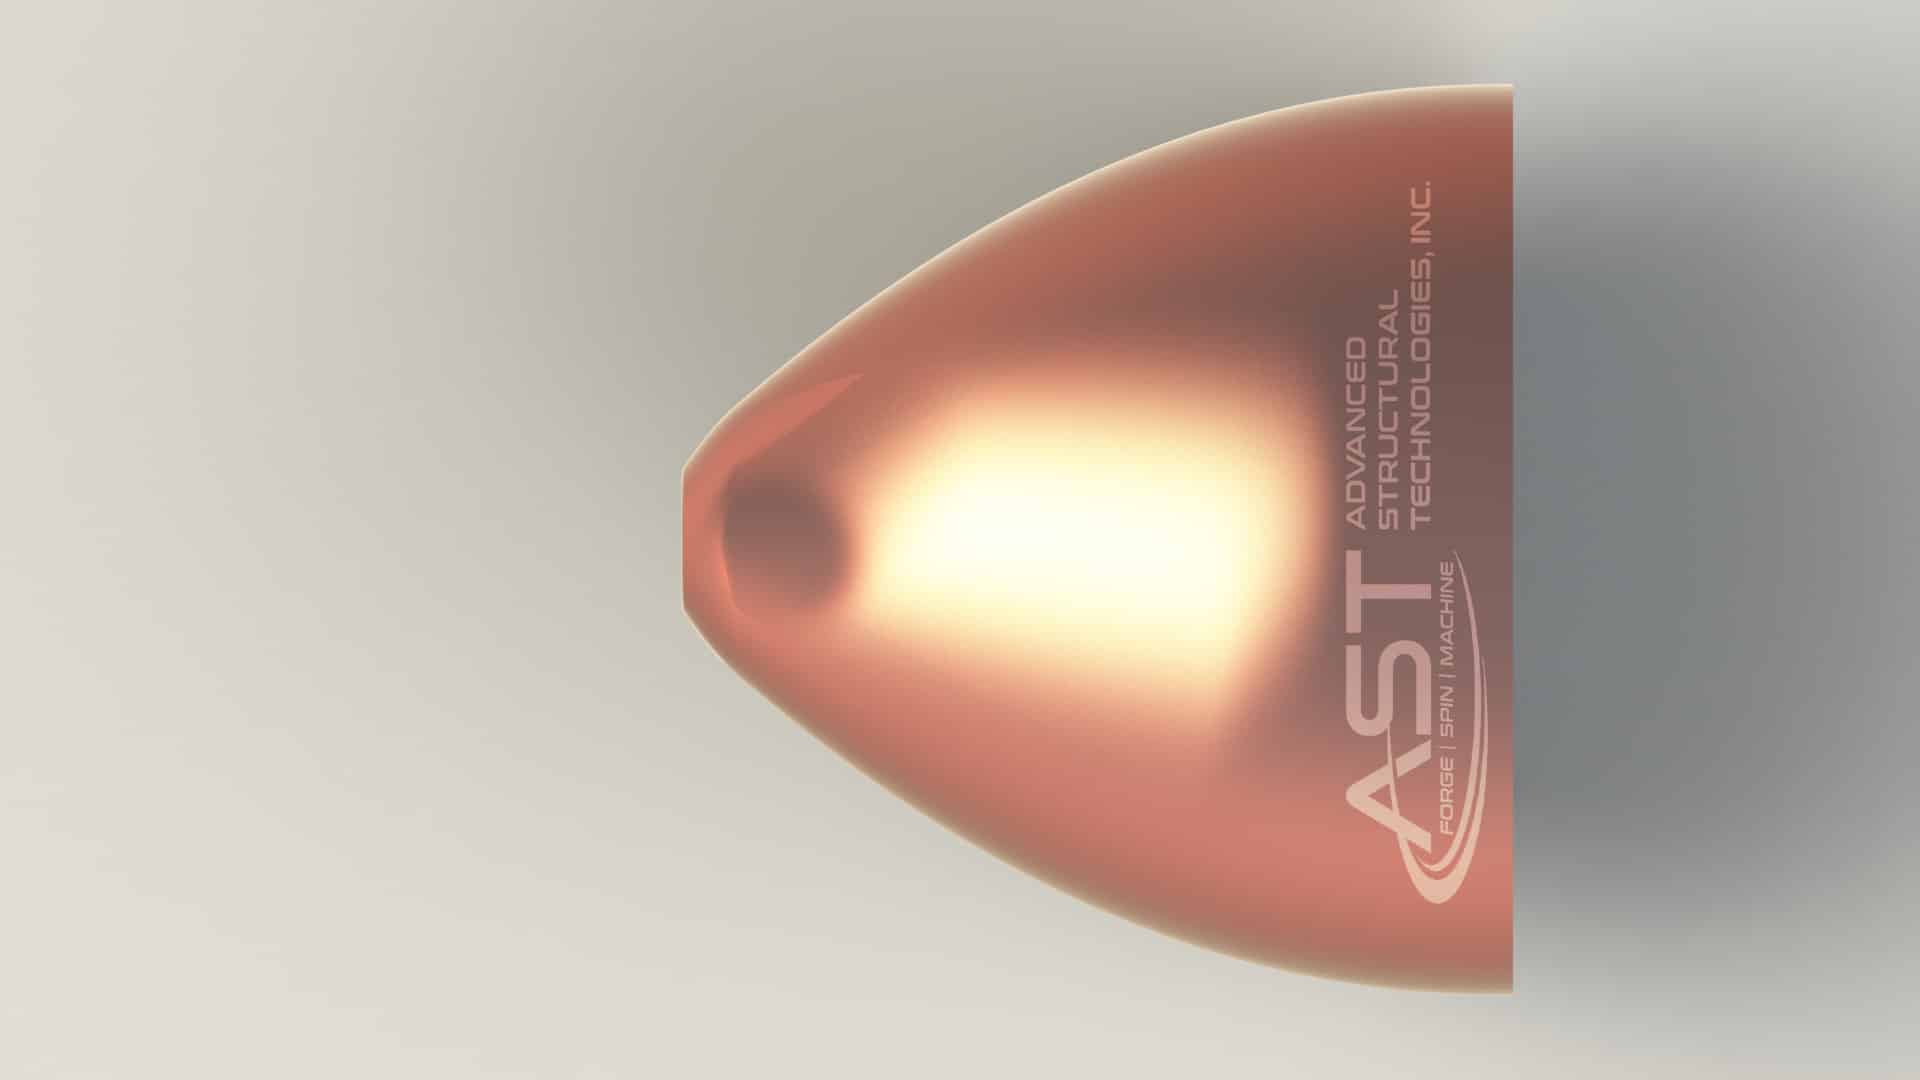 copper rocket nozzle - side